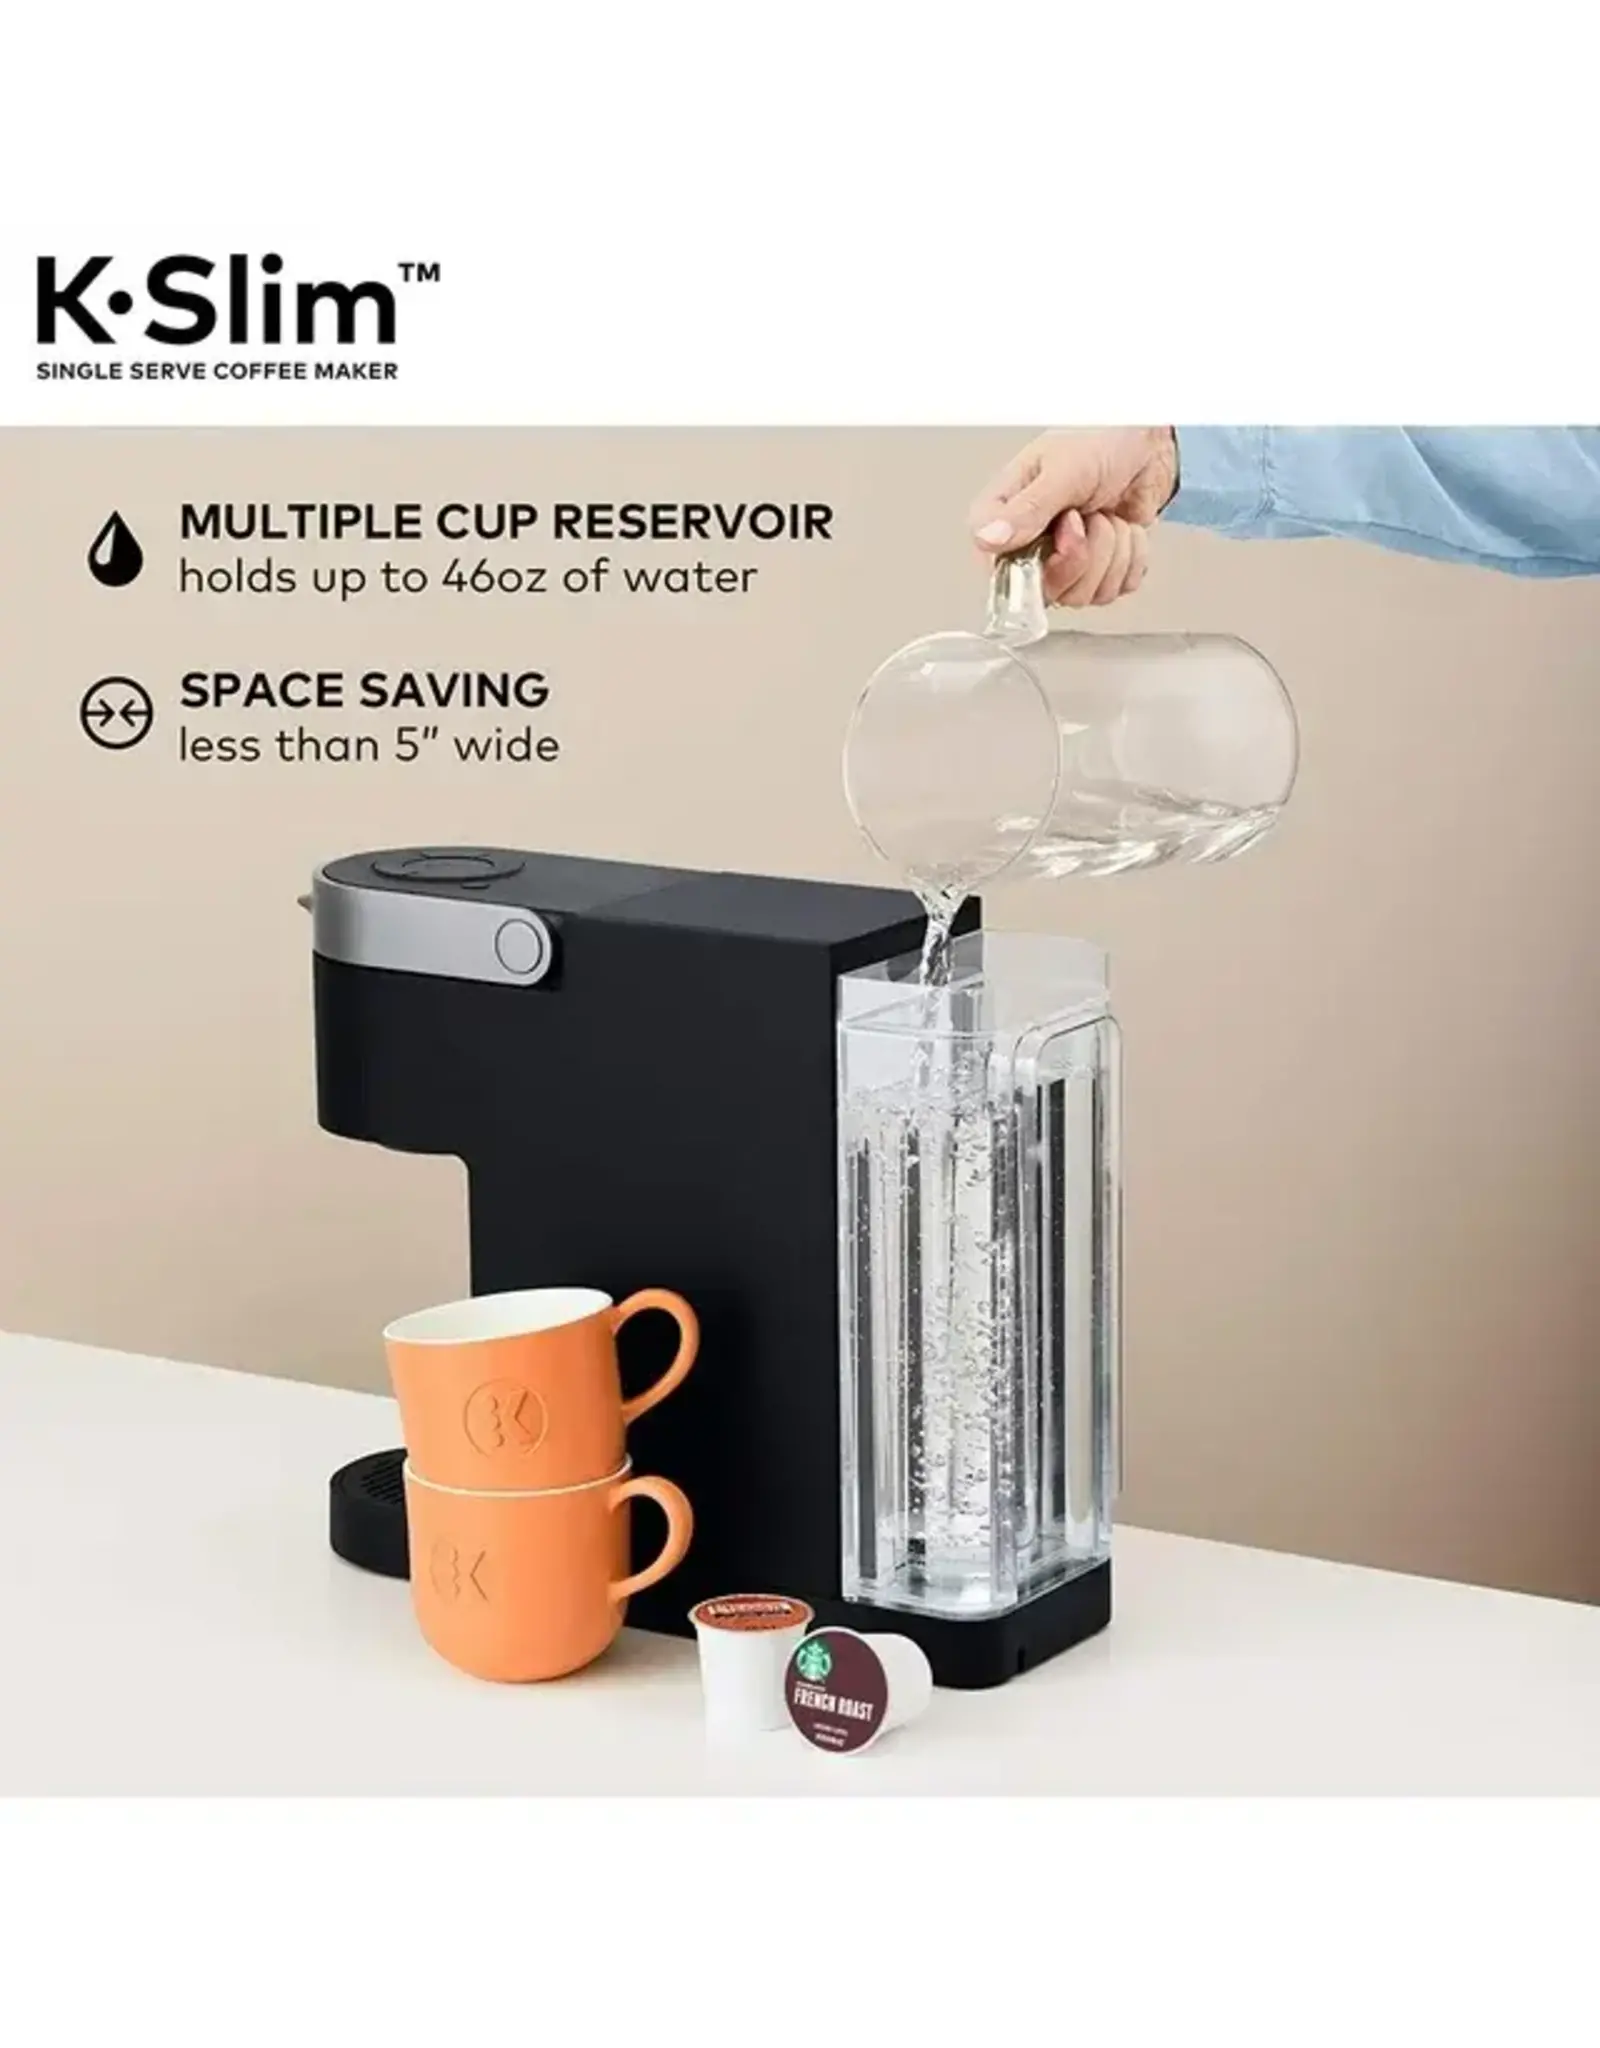 keurig 5000350119 Keurig - K-Slim Single-Serve K-Cup Pod Coffee Maker - Black